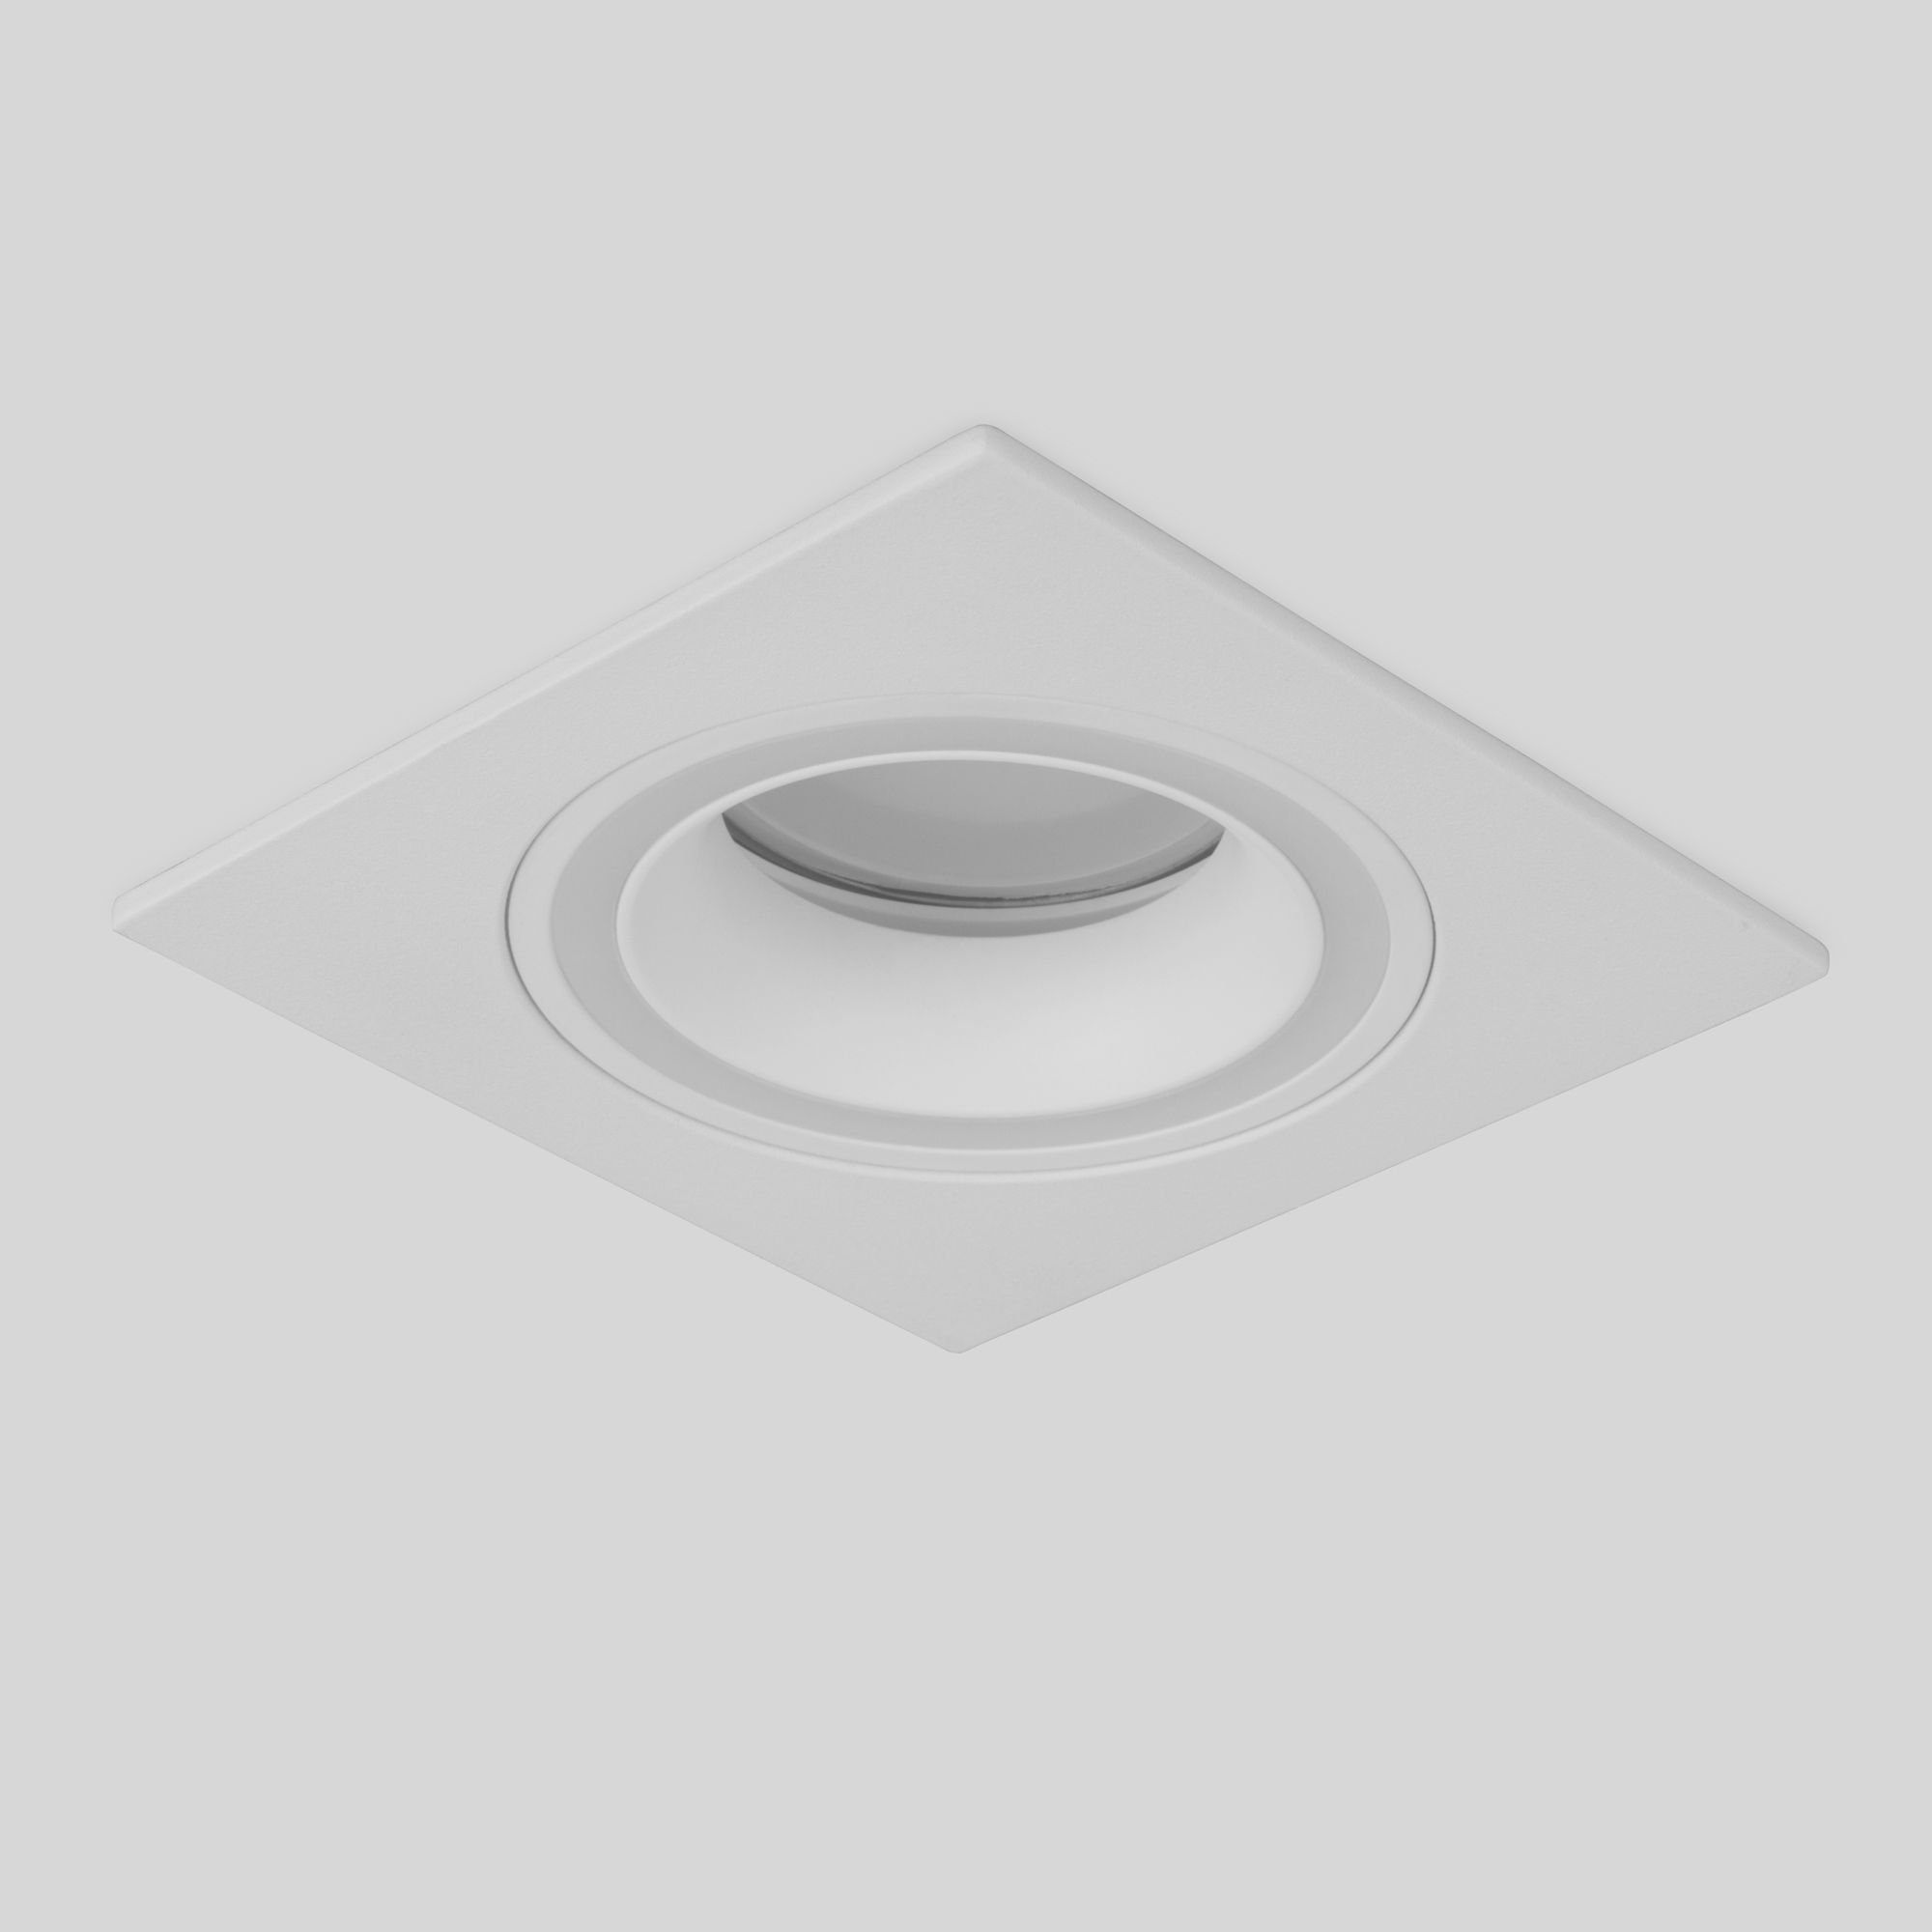 Точечный встраиваемый светильник Elektrostandard Glim S 1091/1 Белый